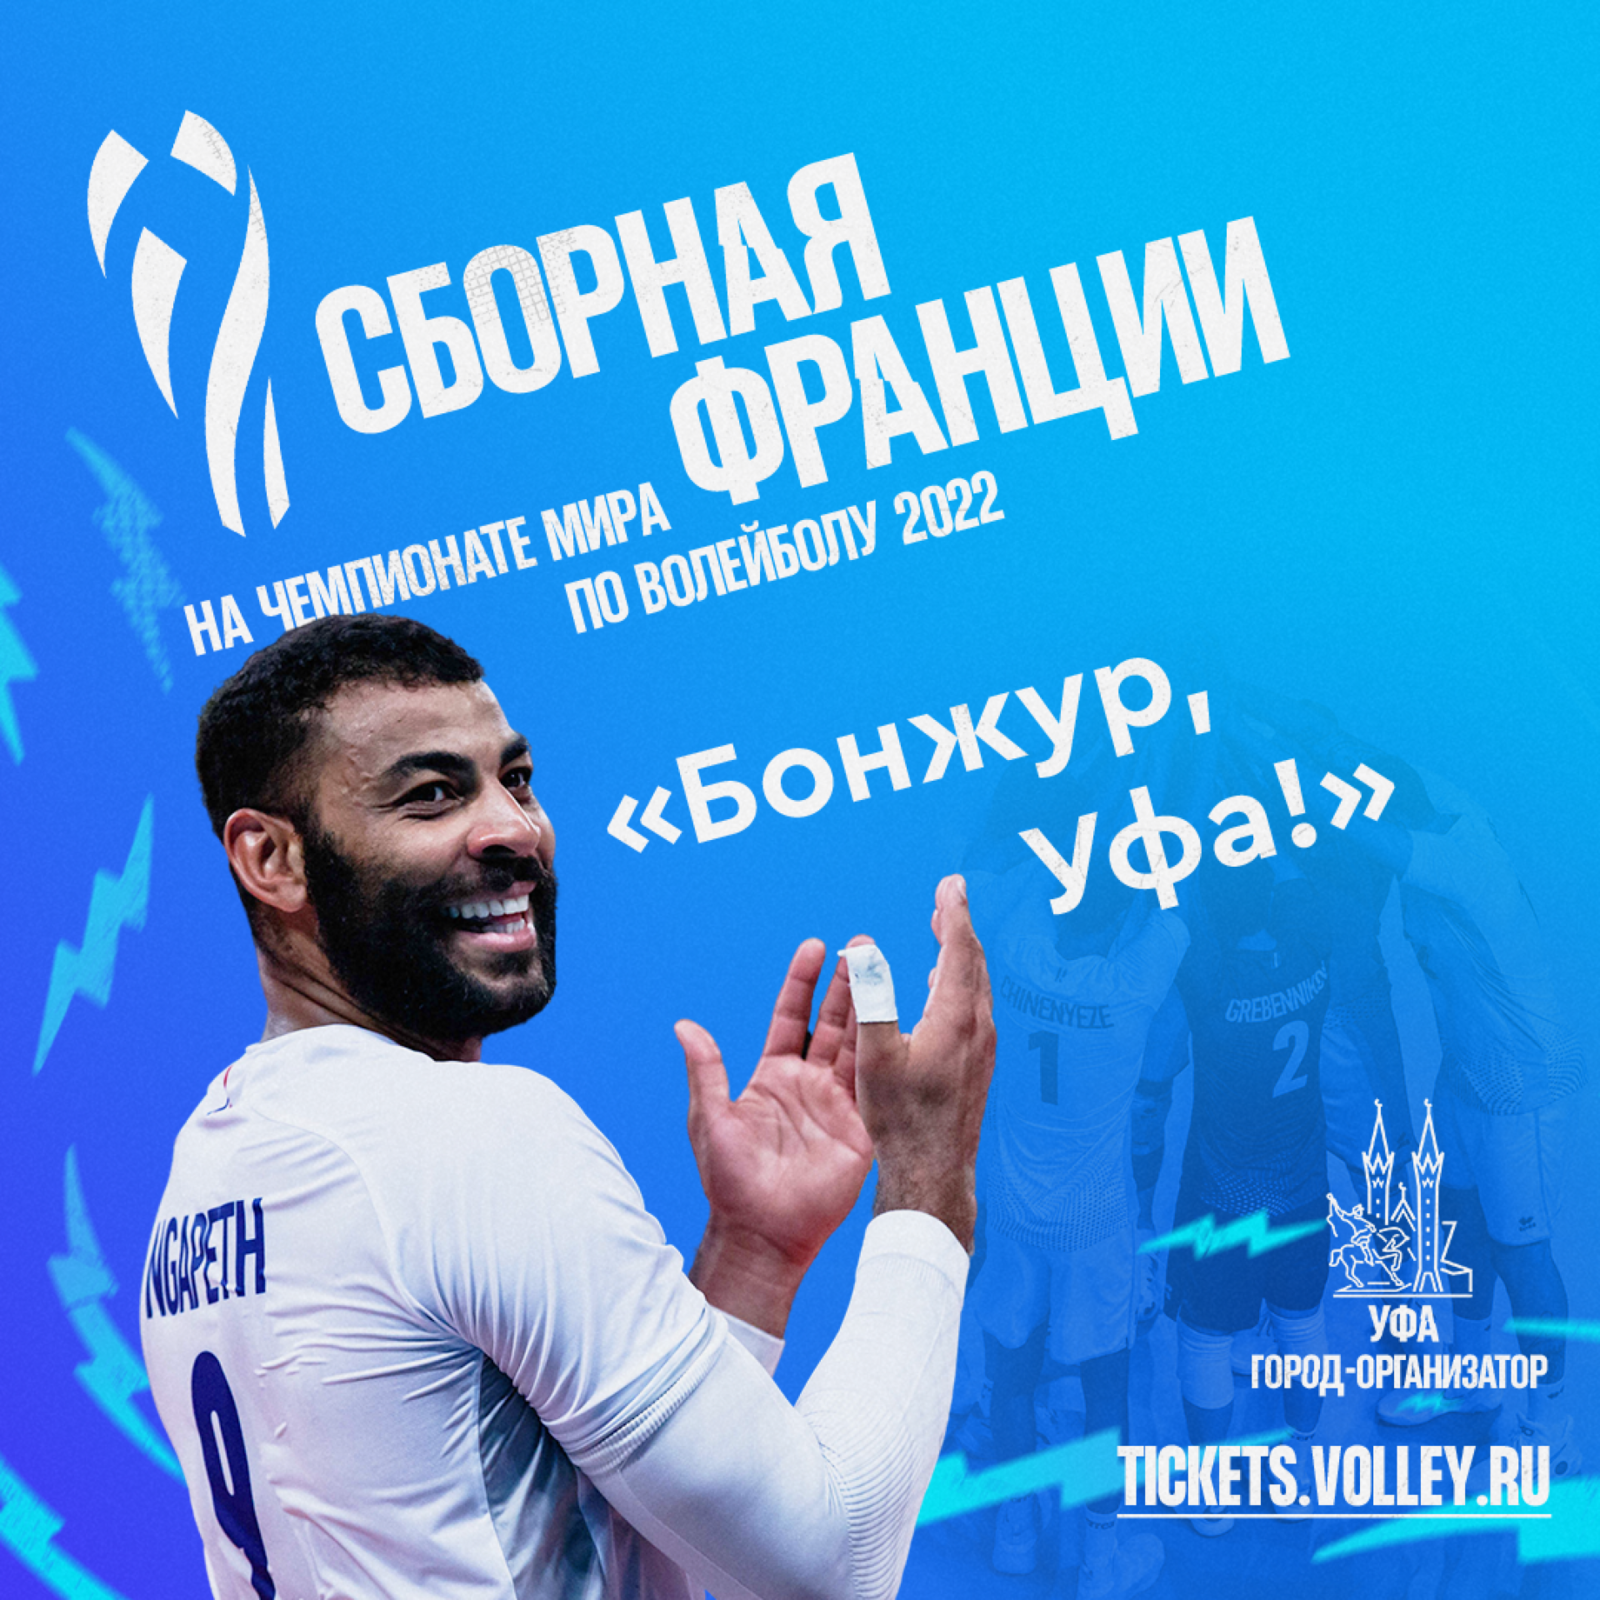 Новая партия билетов на Чемпионат мира по волейболу FIVB 2022 в продаже